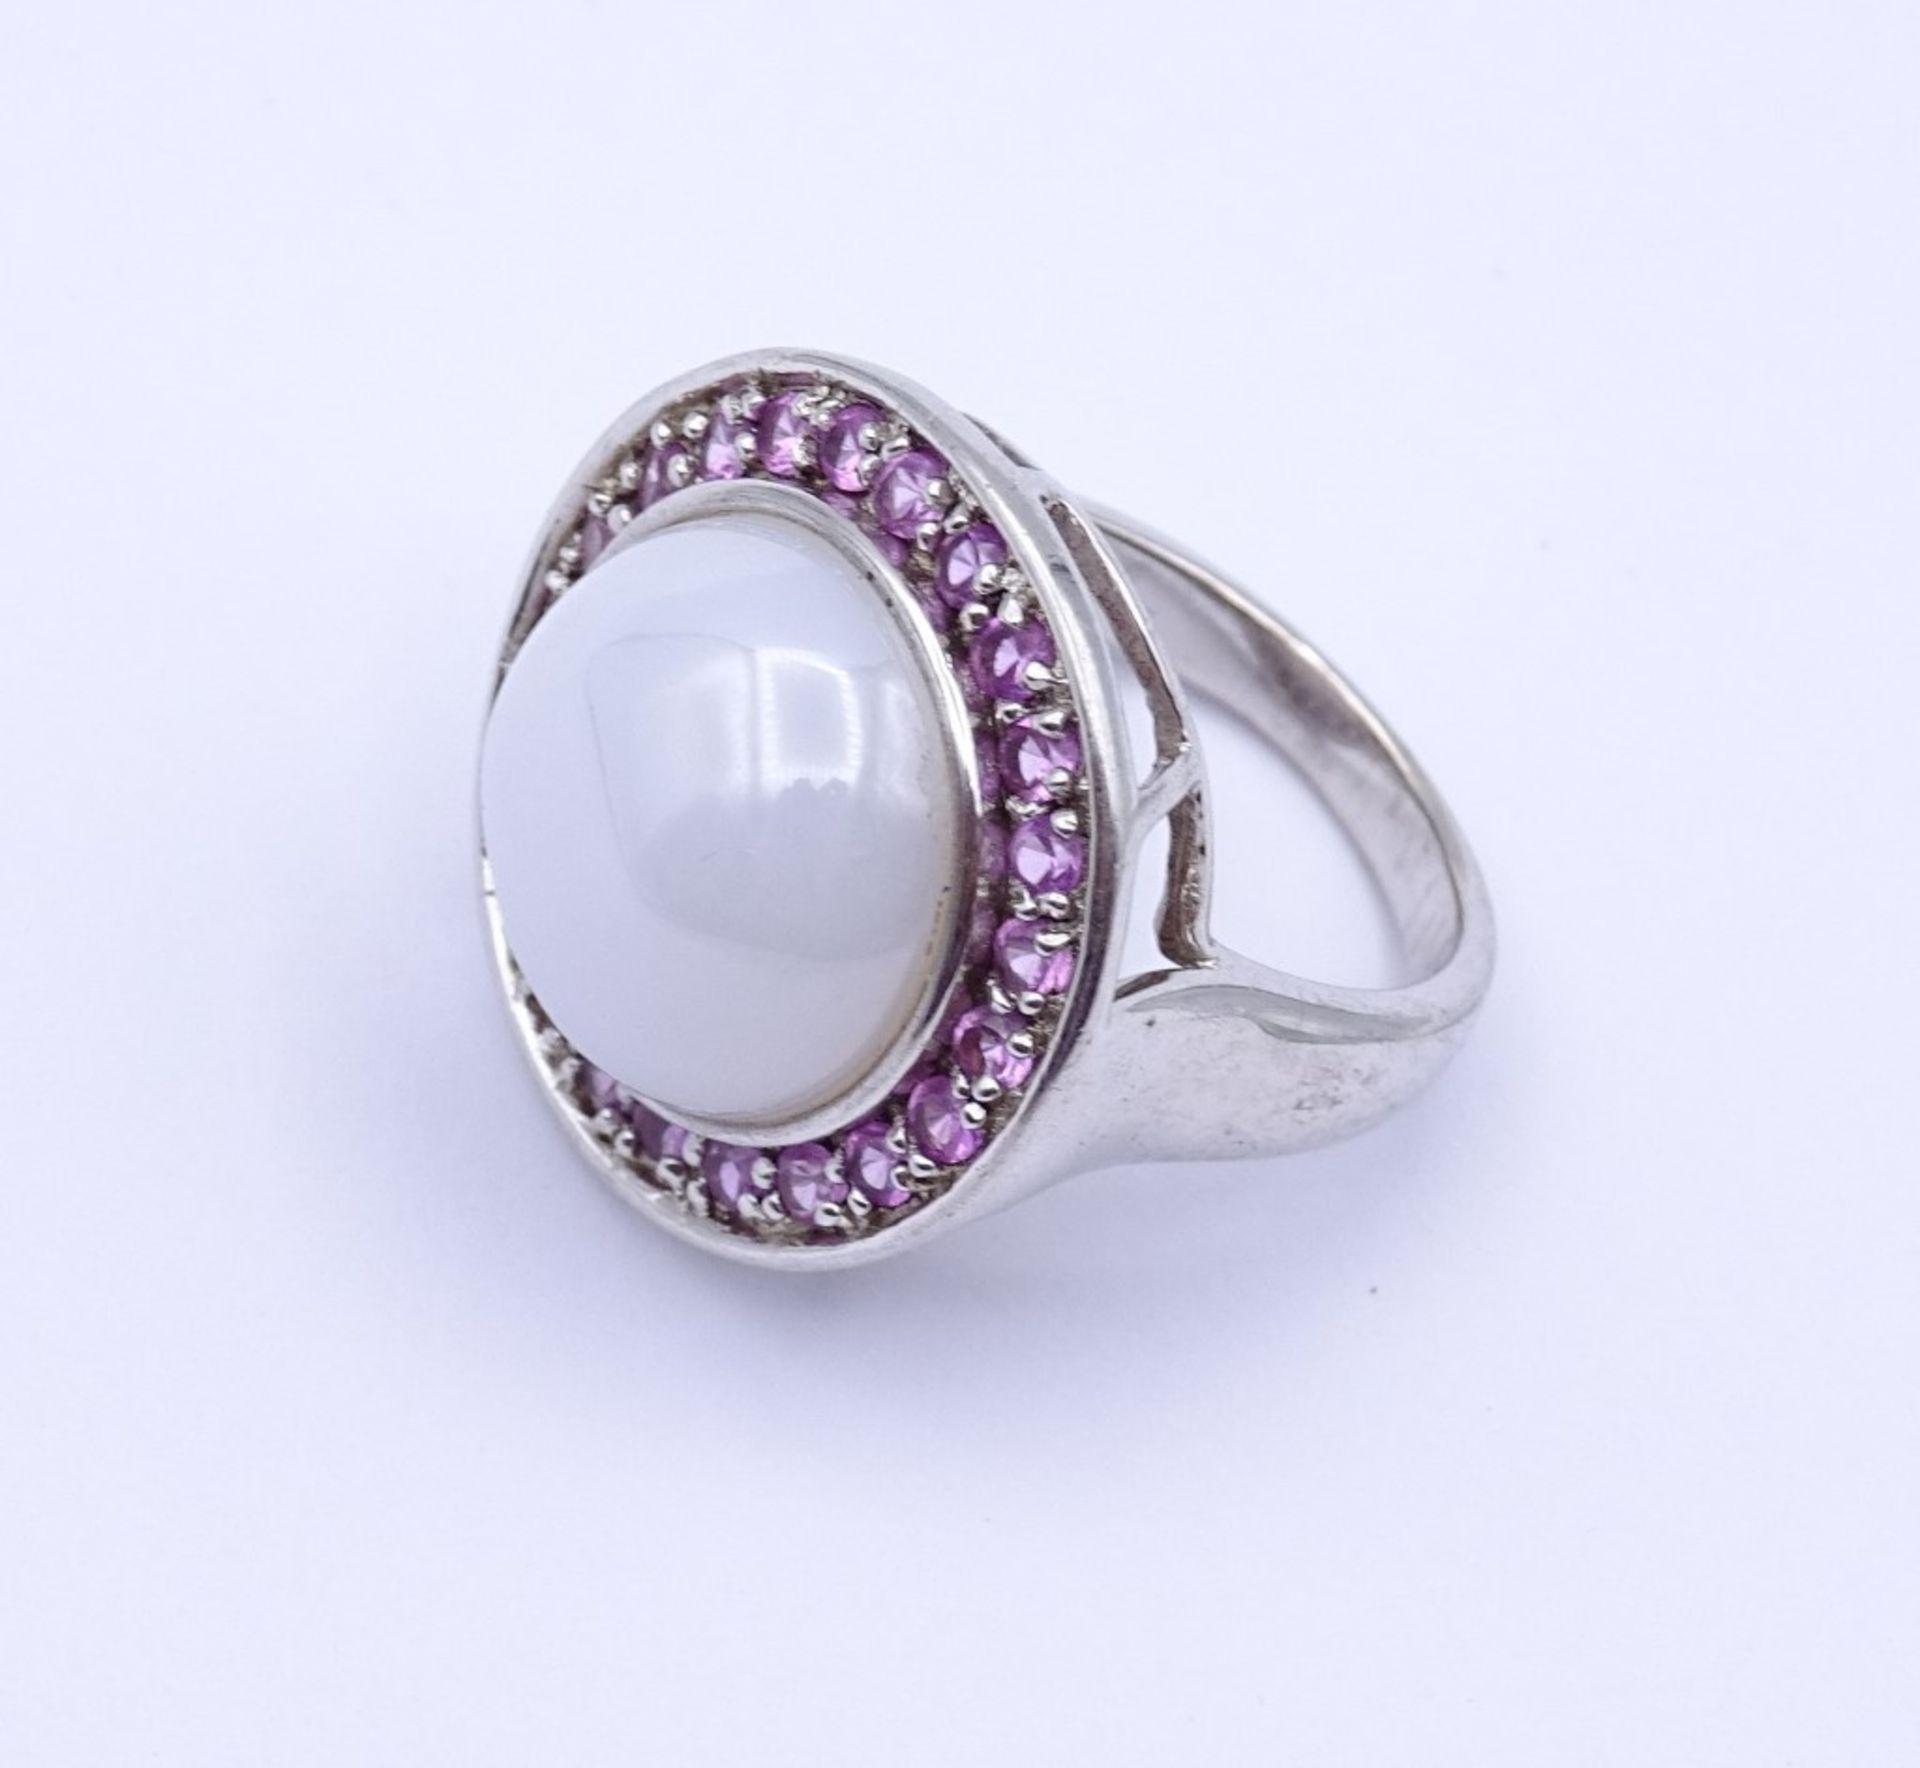 Sterling Silber Ring mit pinken und weissen runden Stein,Silber 925/000, 11,2gr., RG 52"""" - Image 2 of 2